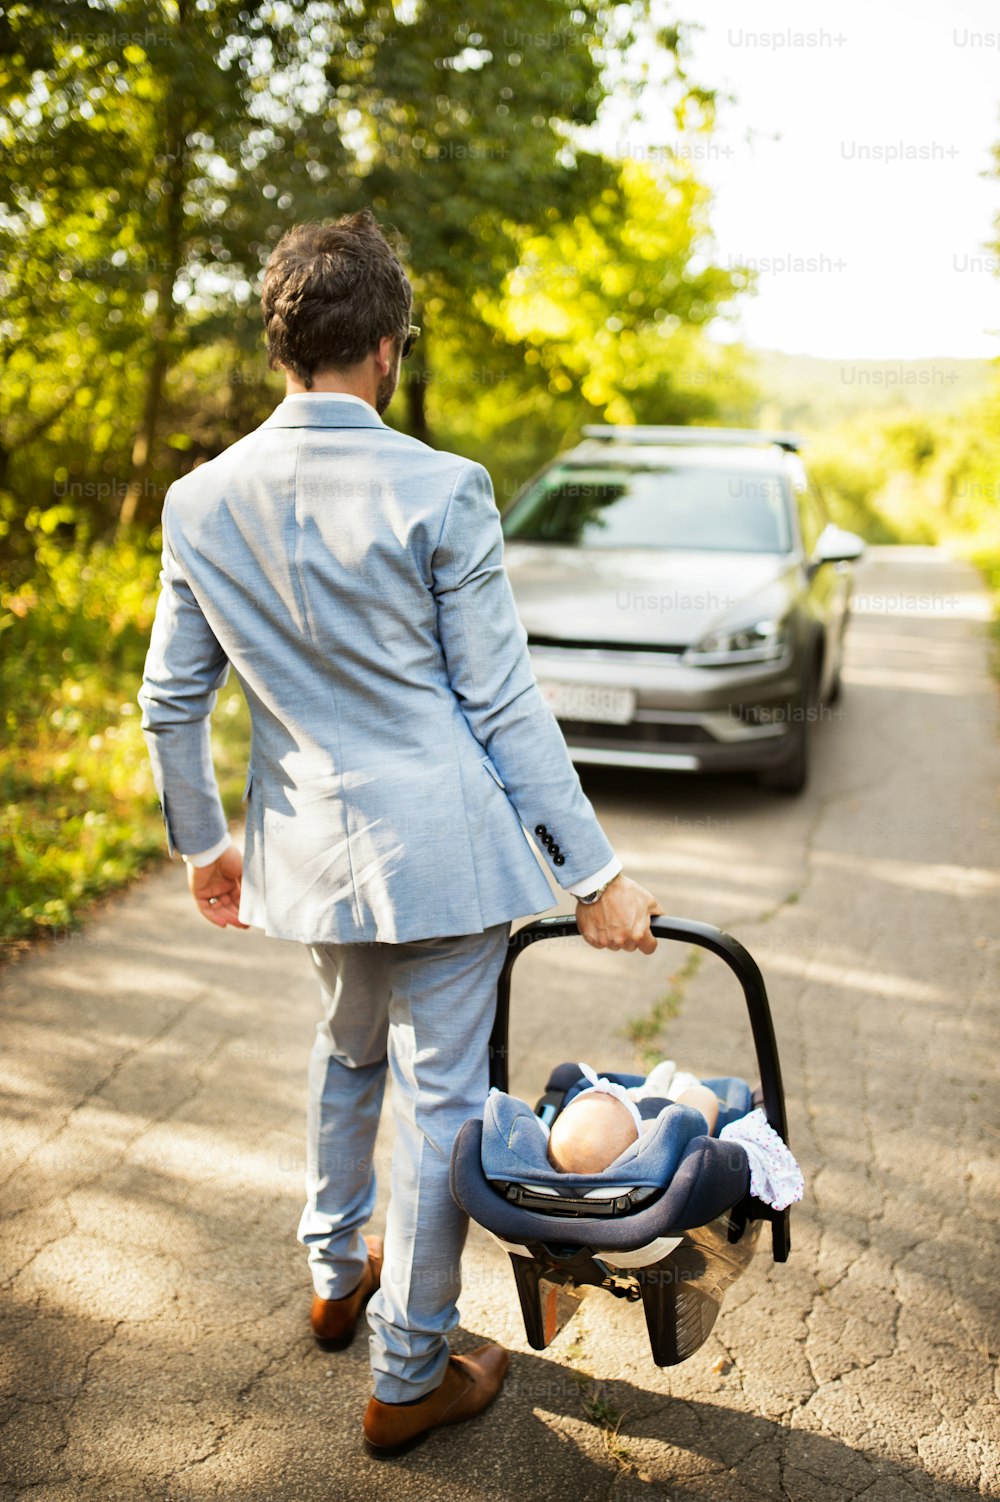 Padre joven cargando a su pequeño bebé en un asiento de automóvil, entrando en el automóvil.